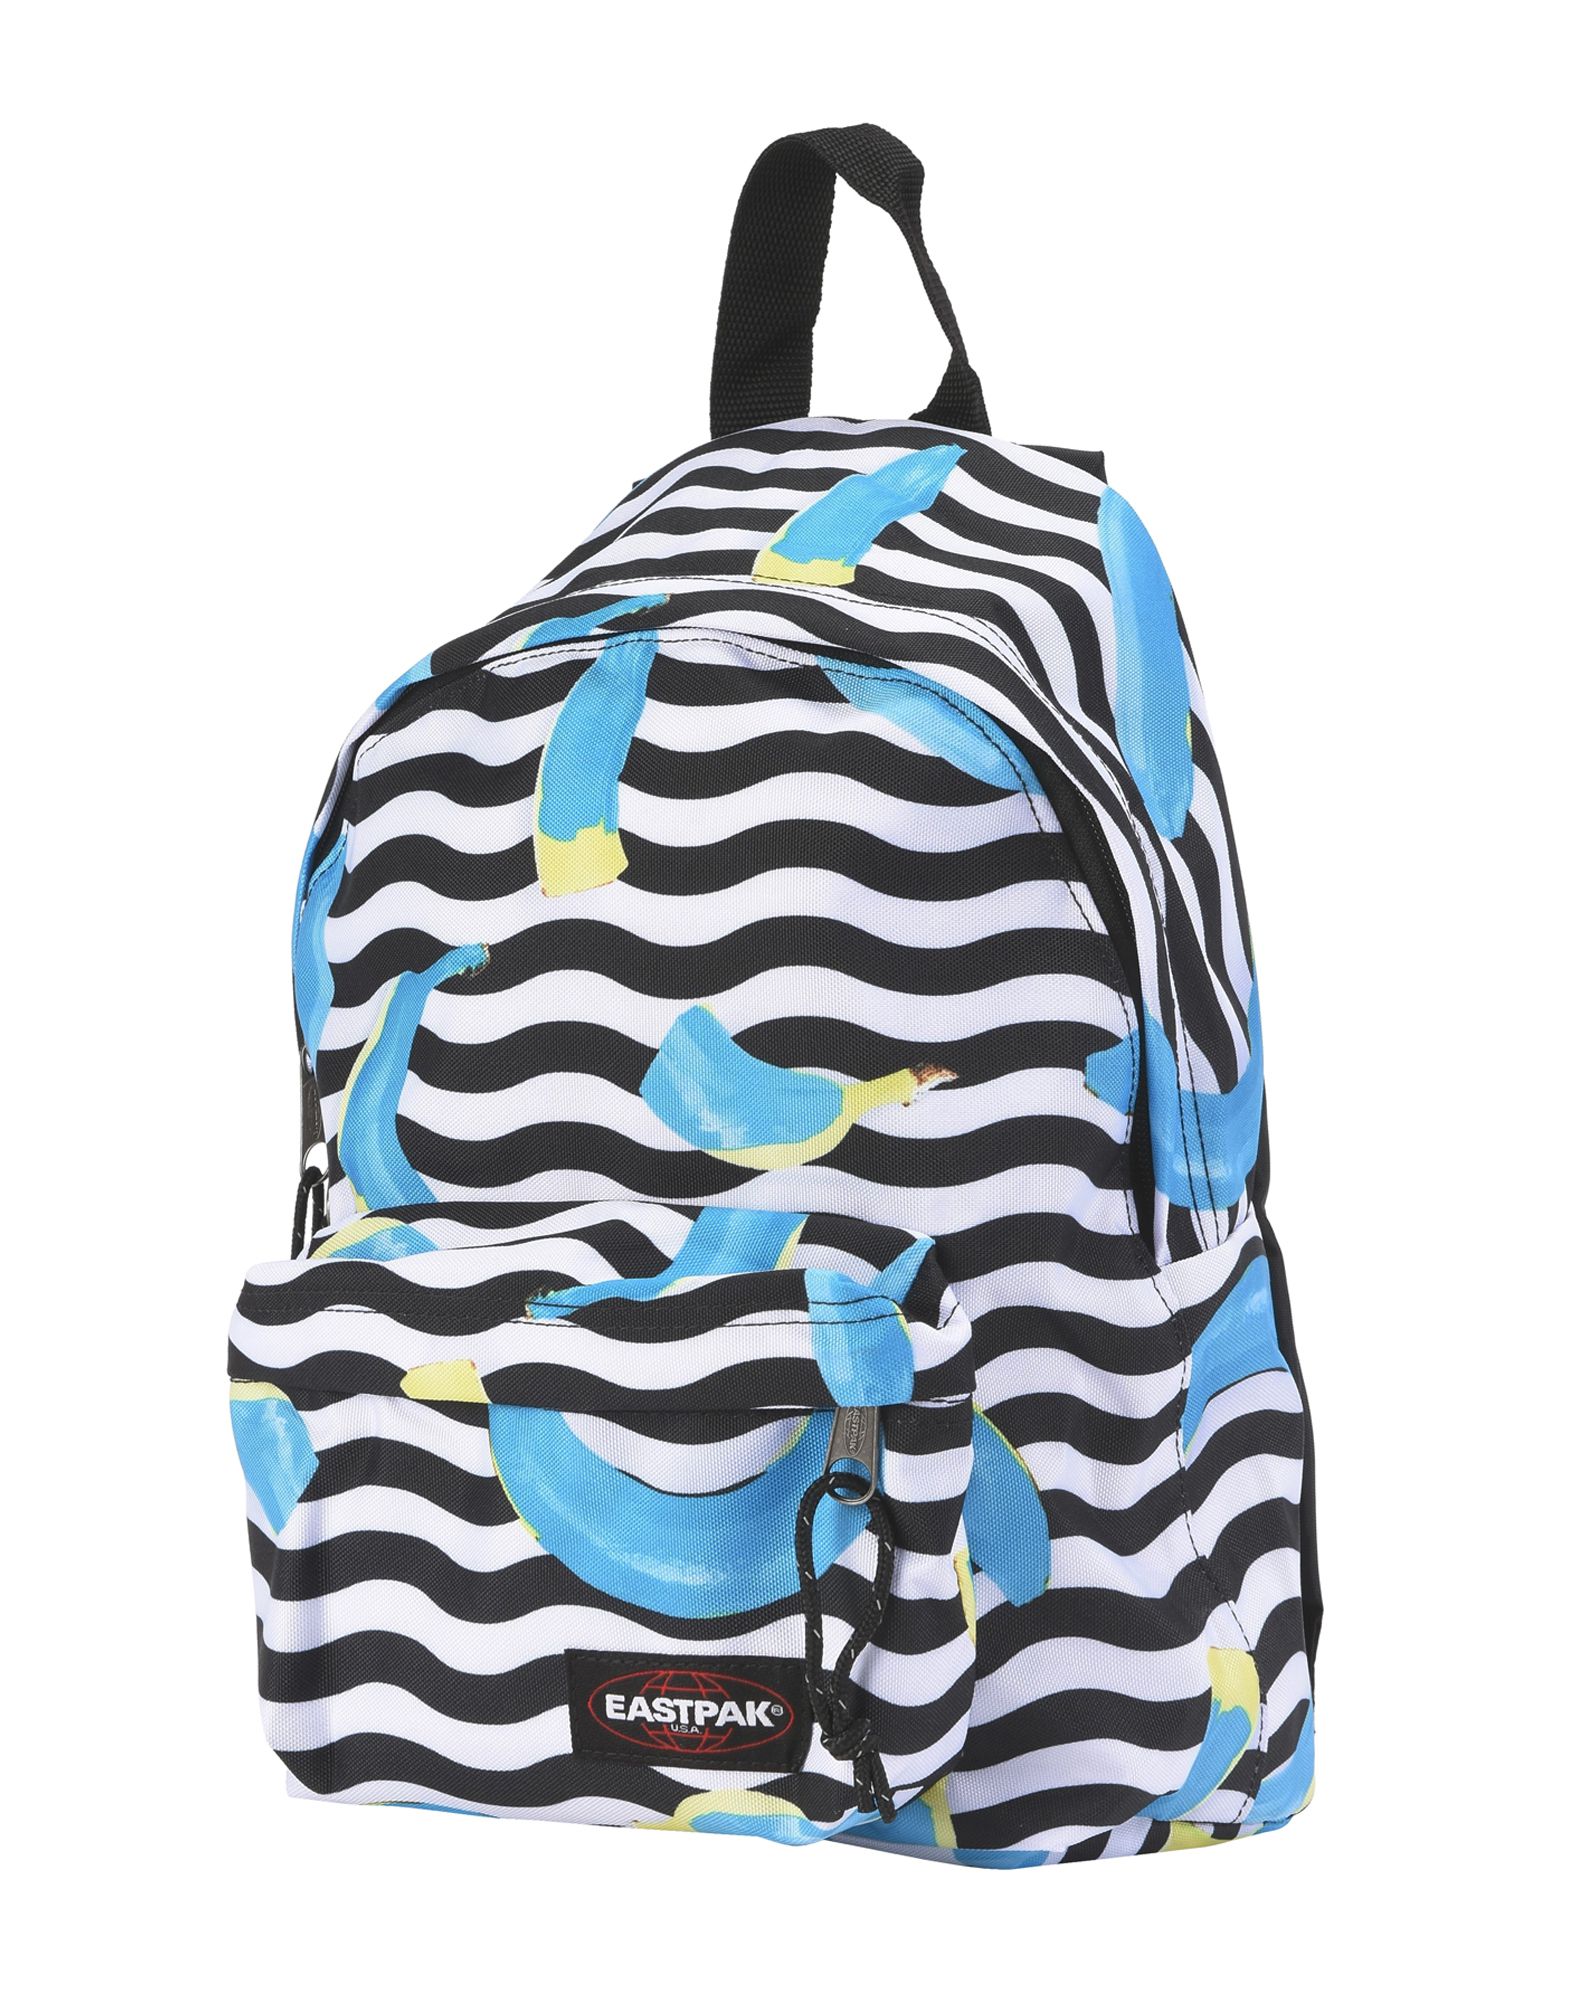 EASTPAK Backpack & fanny pack,45404824BL 1